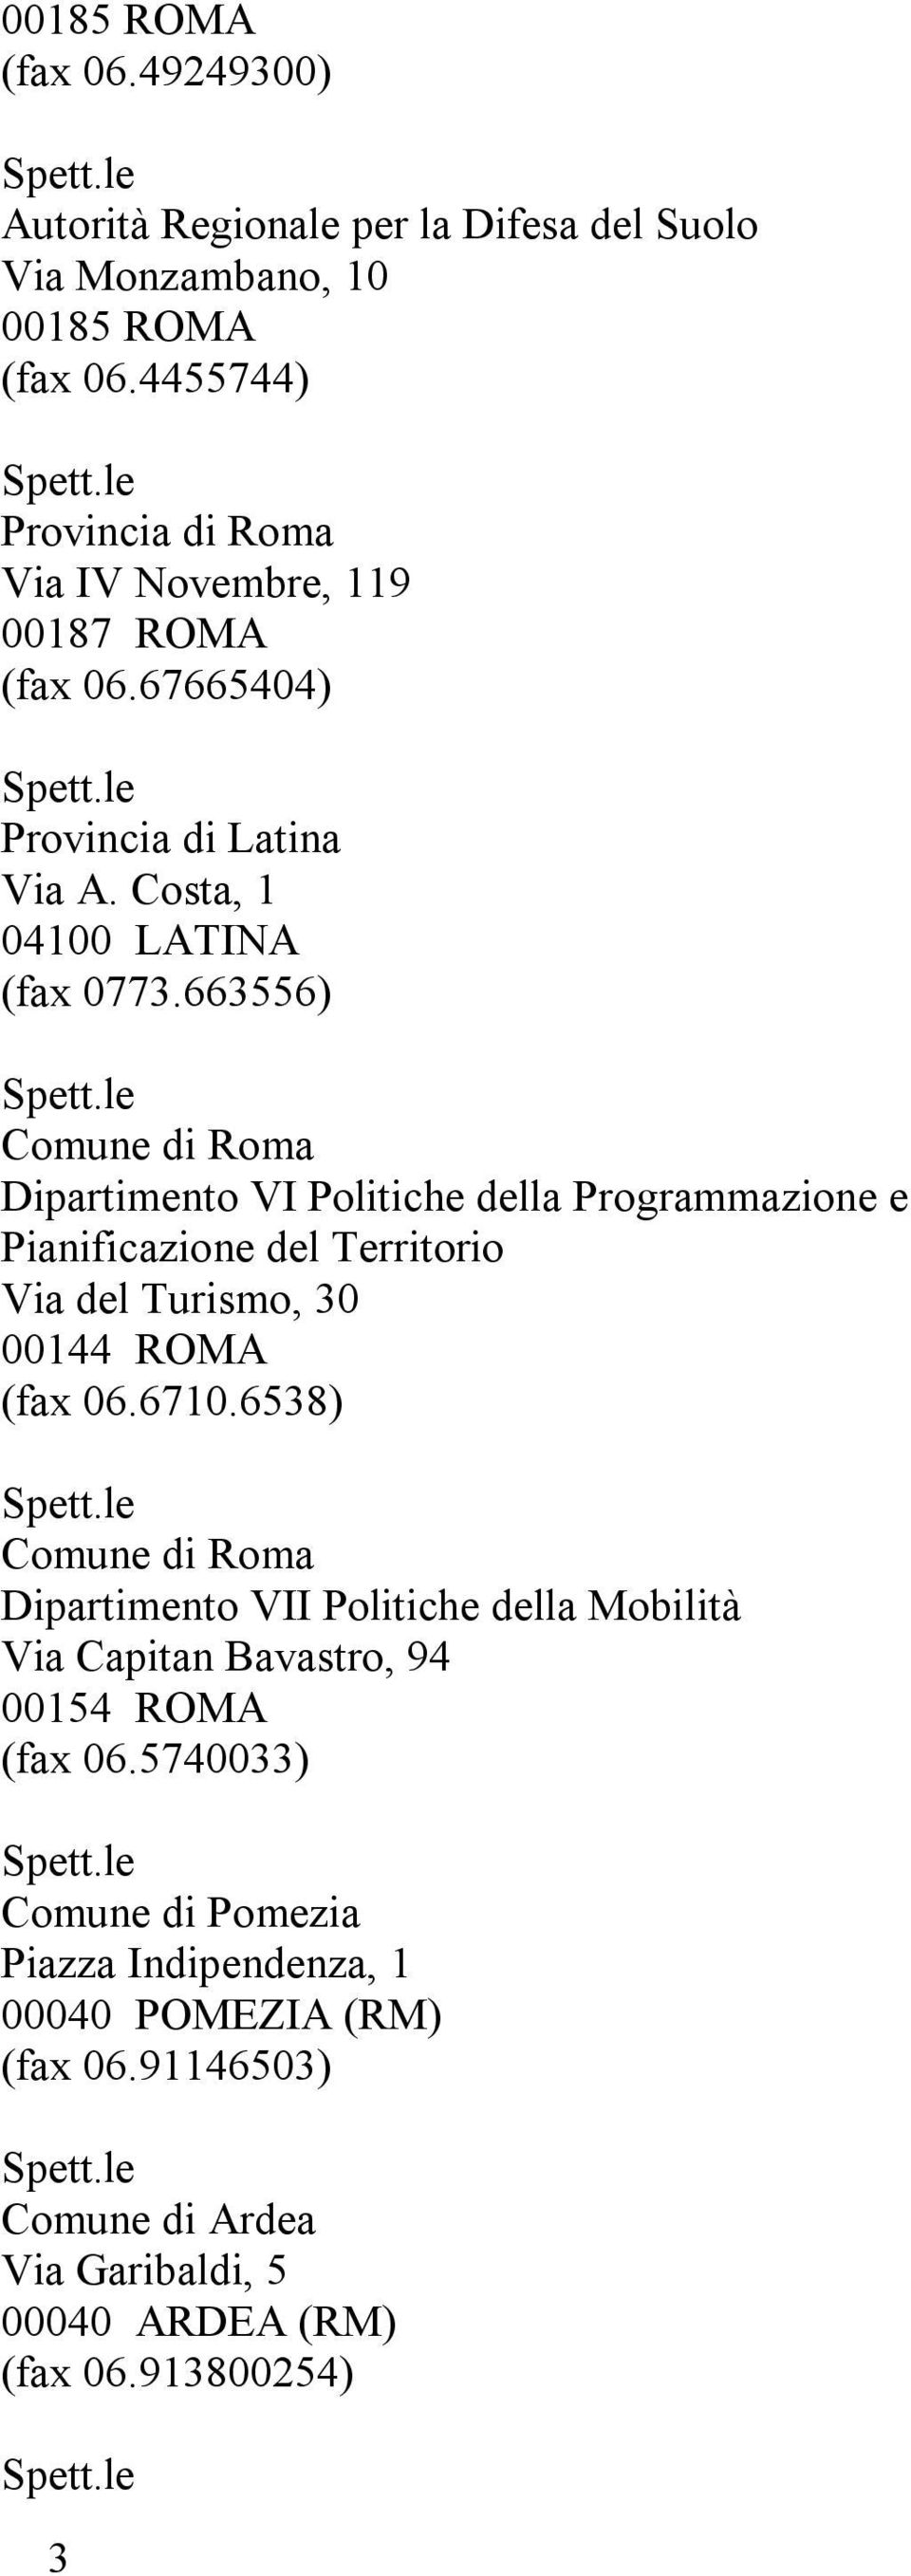 663556) Comune di Roma Dipartimento VI Politiche della Programmazione e Pianificazione del Territorio Via del Turismo, 30 00144 ROMA (fax 06.6710.